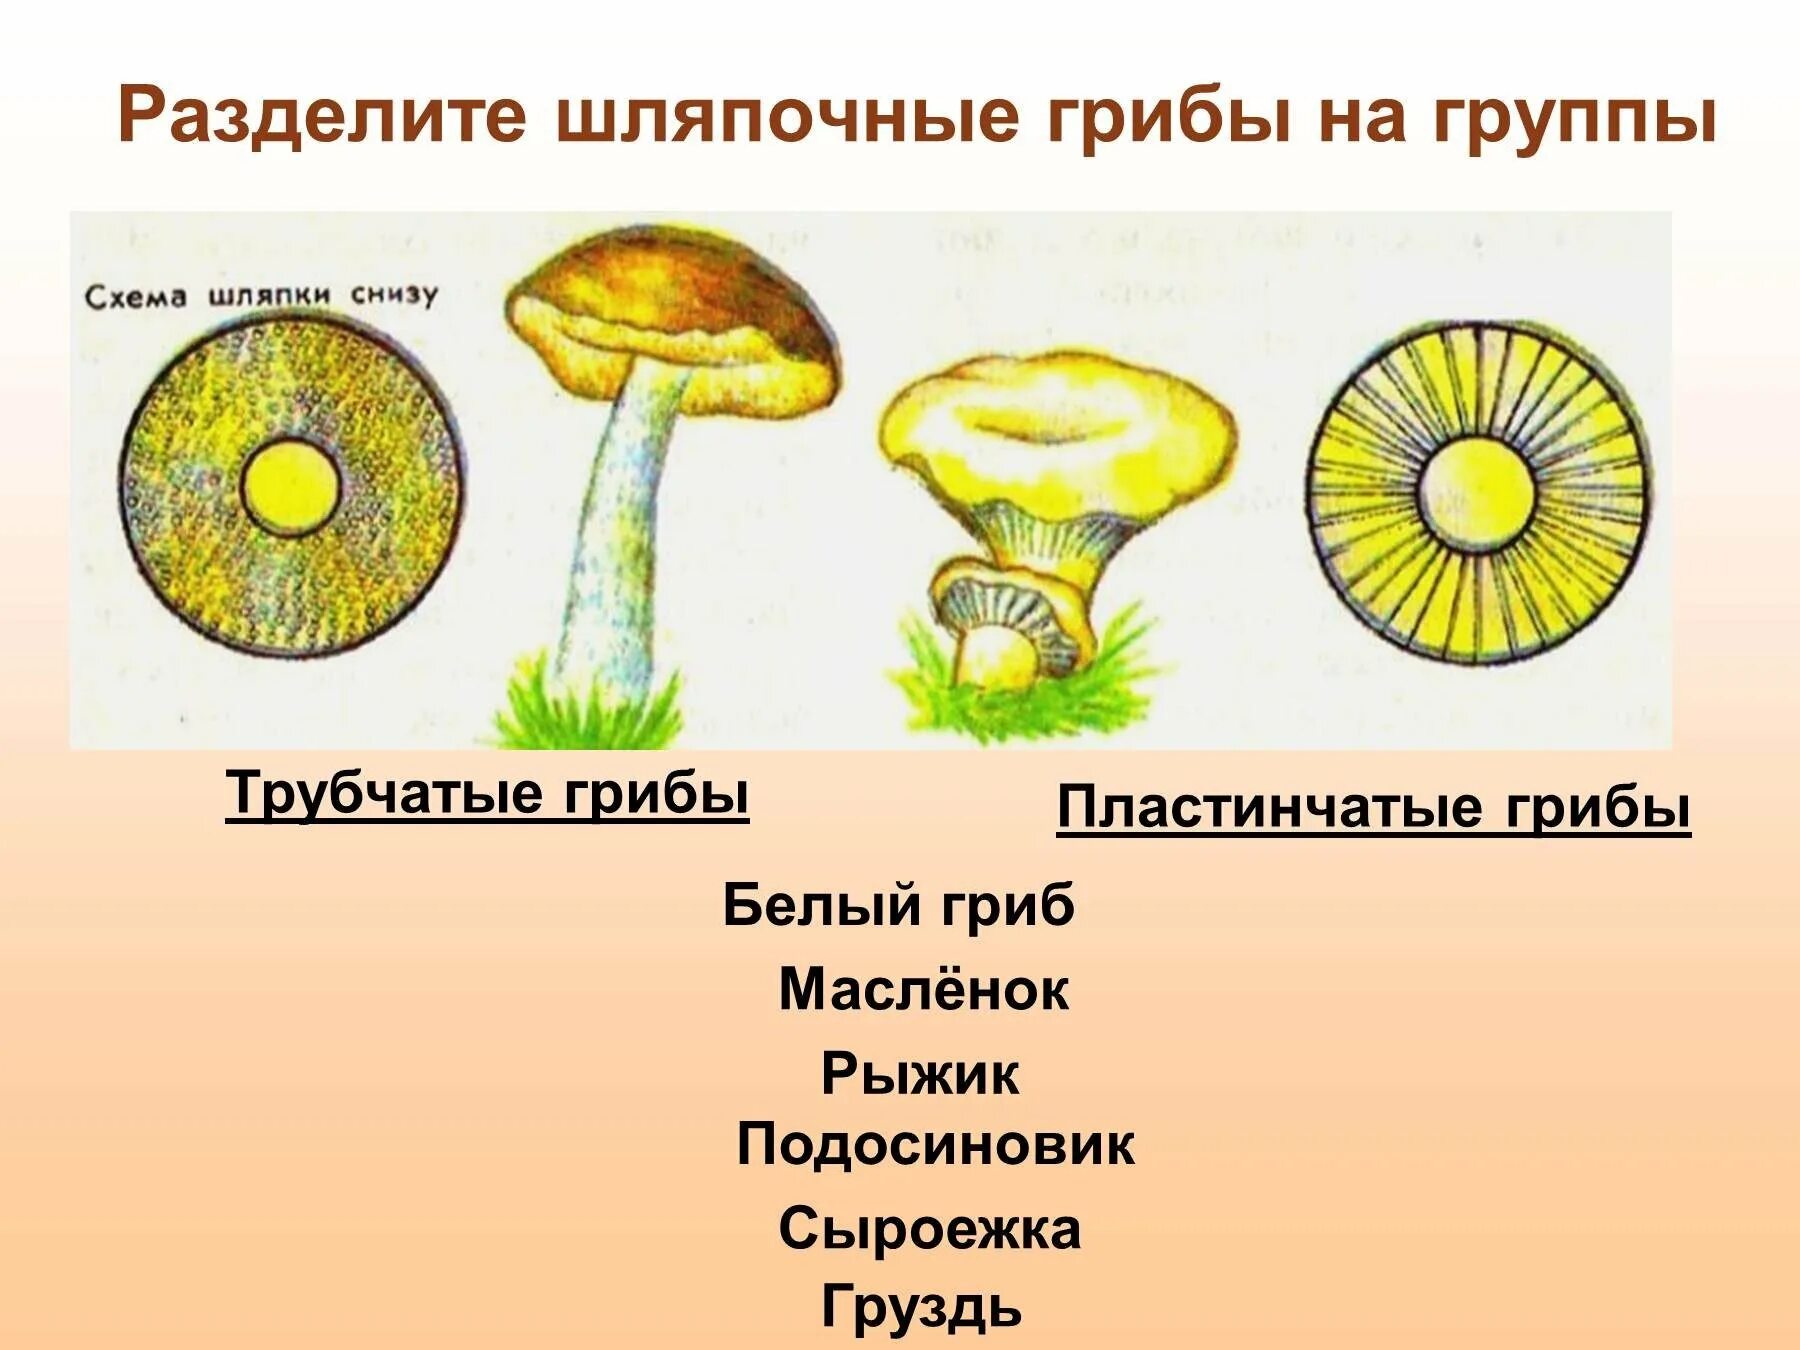 Какое основание позволило разделить грибы. Шляпочные грибы трубчатые и пластинчатые. Трубчатые Шляпочные грибы Рыжик. Шляпочные трубчатые грибы Шляпочные пластинчатые грибы. Трубчатые и пластинчатые грибы 5 класс биология.